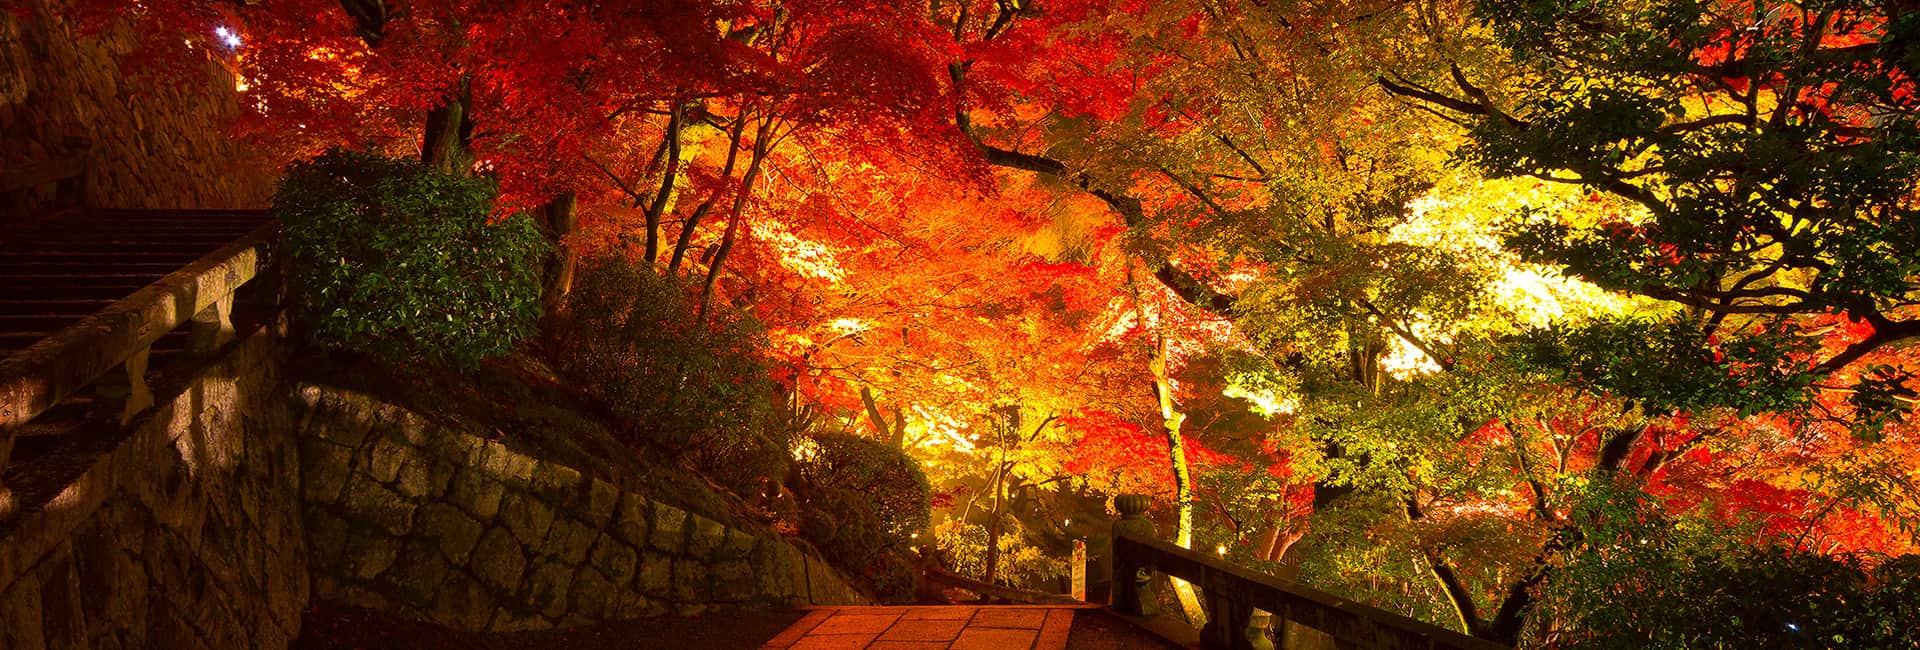 Des érables du Japon illuminés la nuit en automne à Kyoto